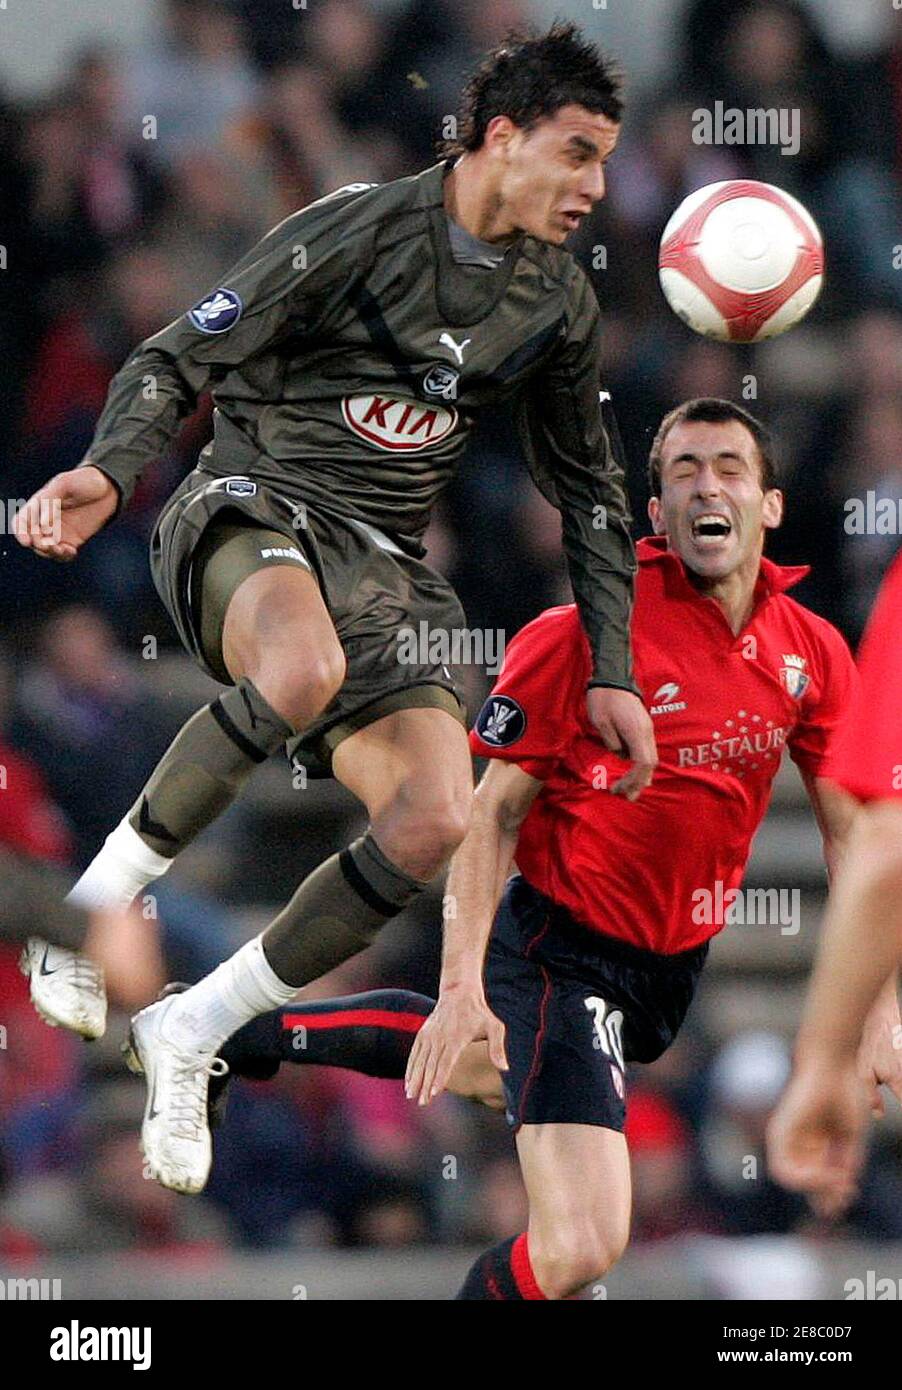 Marouane Chamakh (L) de Girondins Bordeaux saute pour le ballon avec Martin  Enrique Corrales d'Osasuna lors de leur match de football de la coupe UEFA  au stade de Chaban Delmas à Bordeaux,